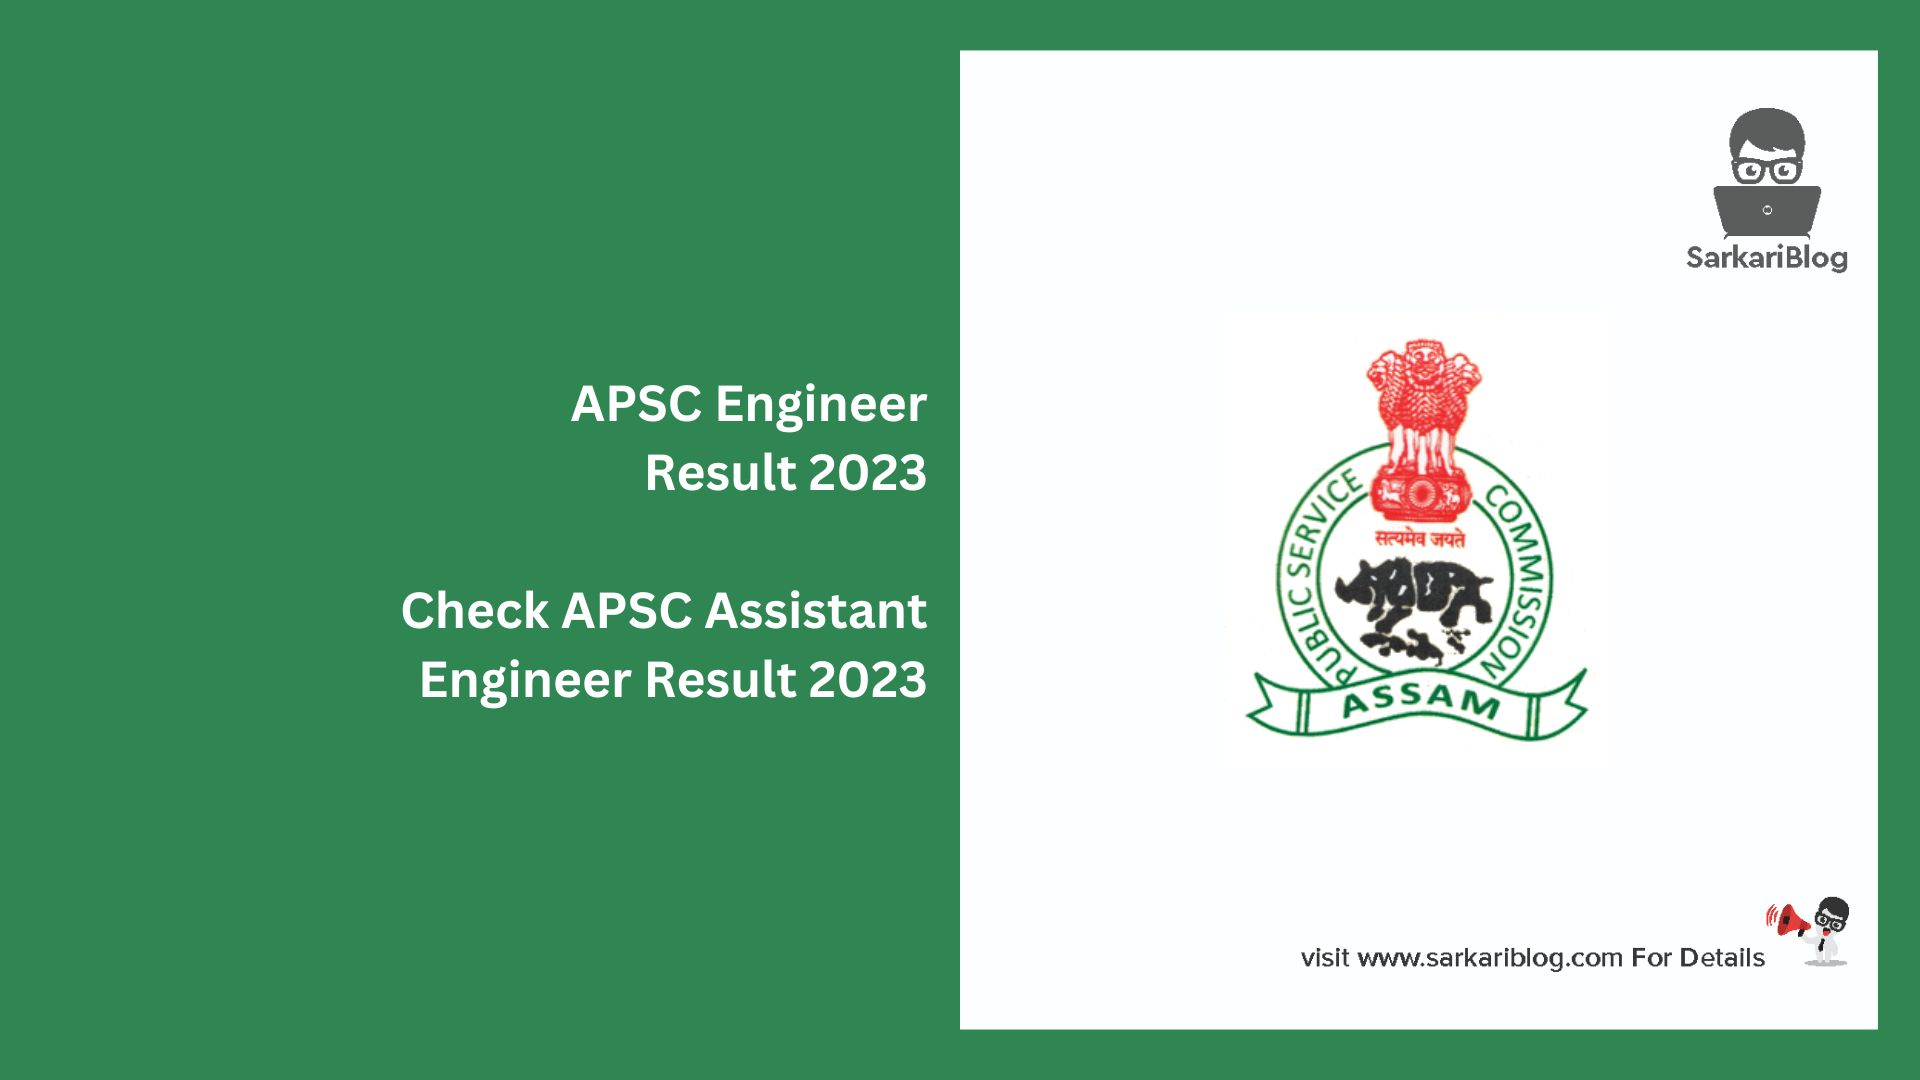 APSC Engineer Result 2023